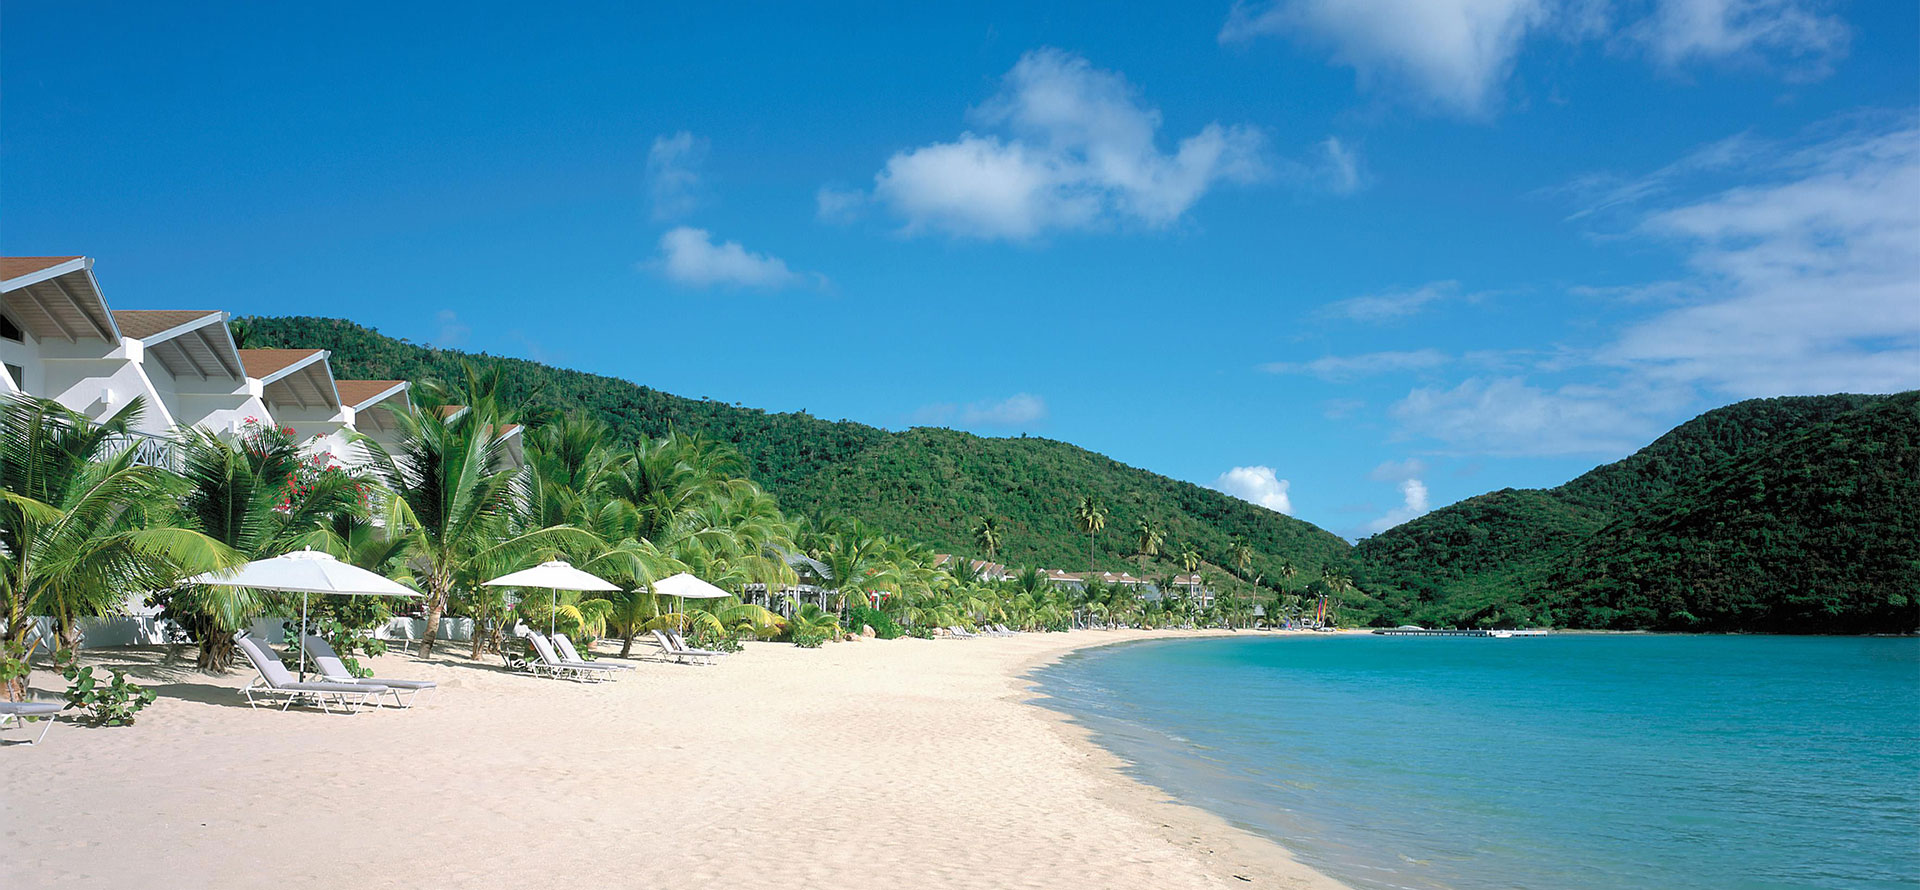 Antigua honeymoon resorts with beach.